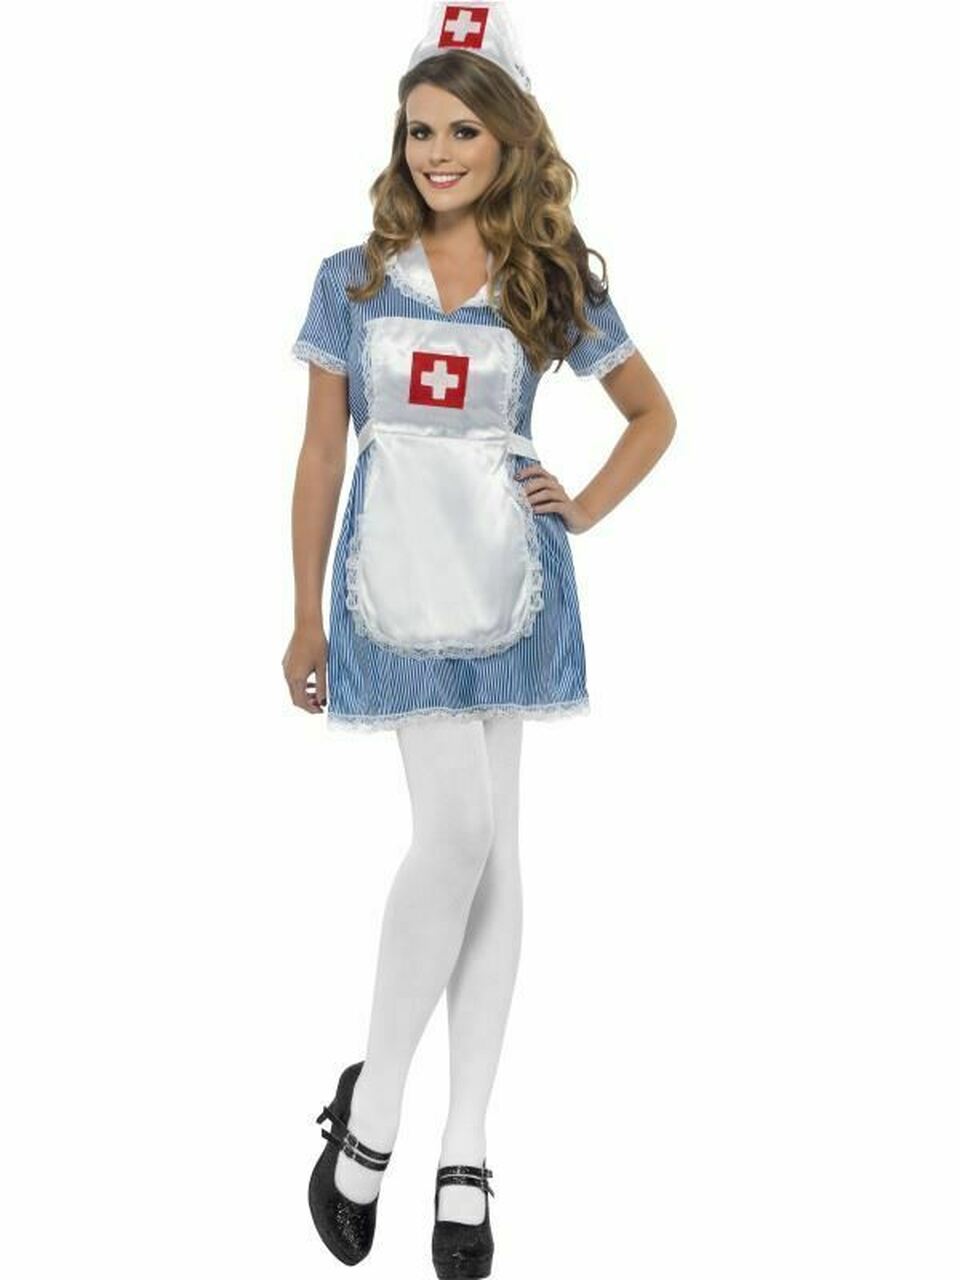 Nurse Naughty costume